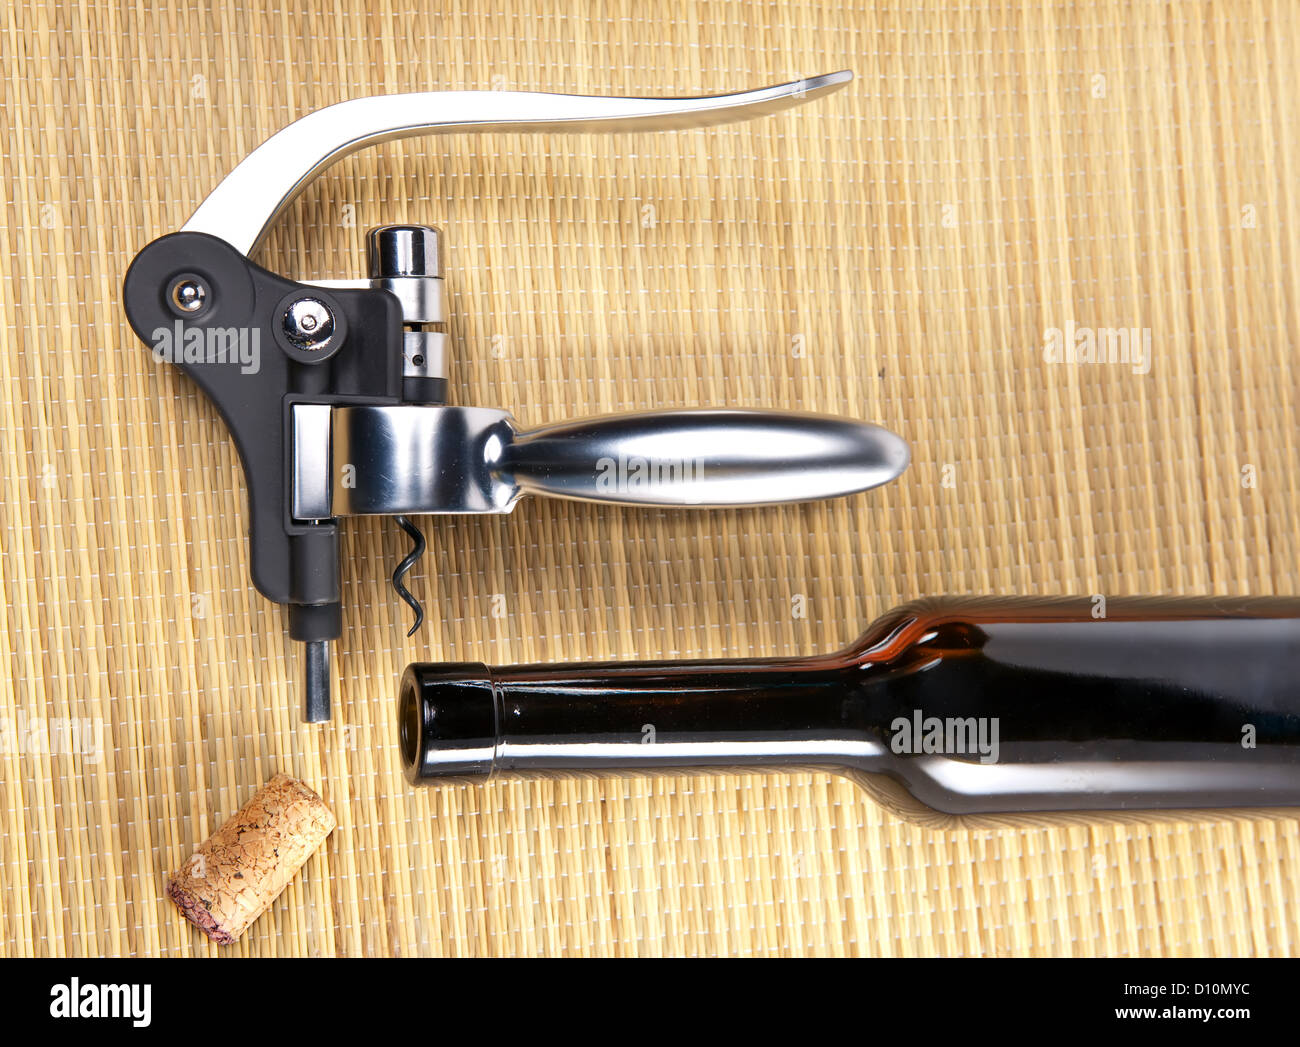 corkscrew opener for wine bottles Stock Photo